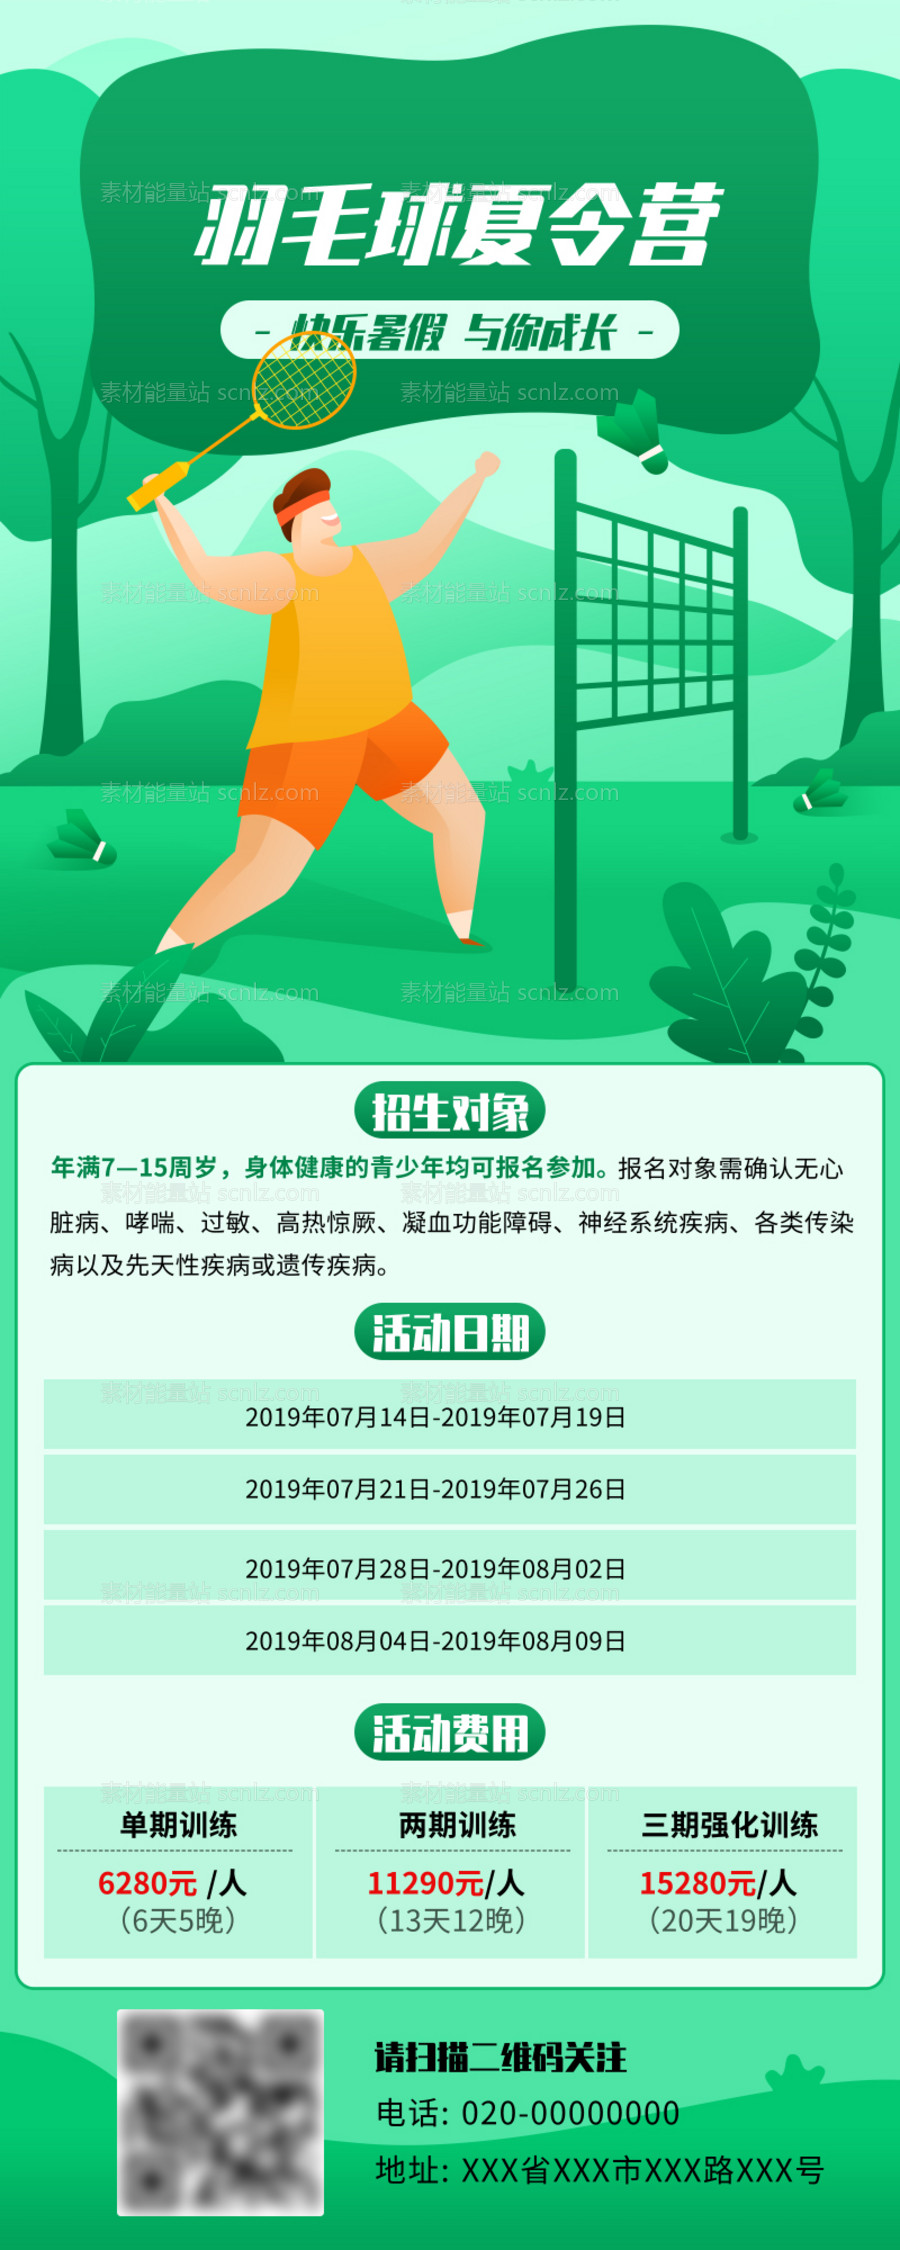 素材能量站-暑假羽毛球夏令营招生活动长图海报